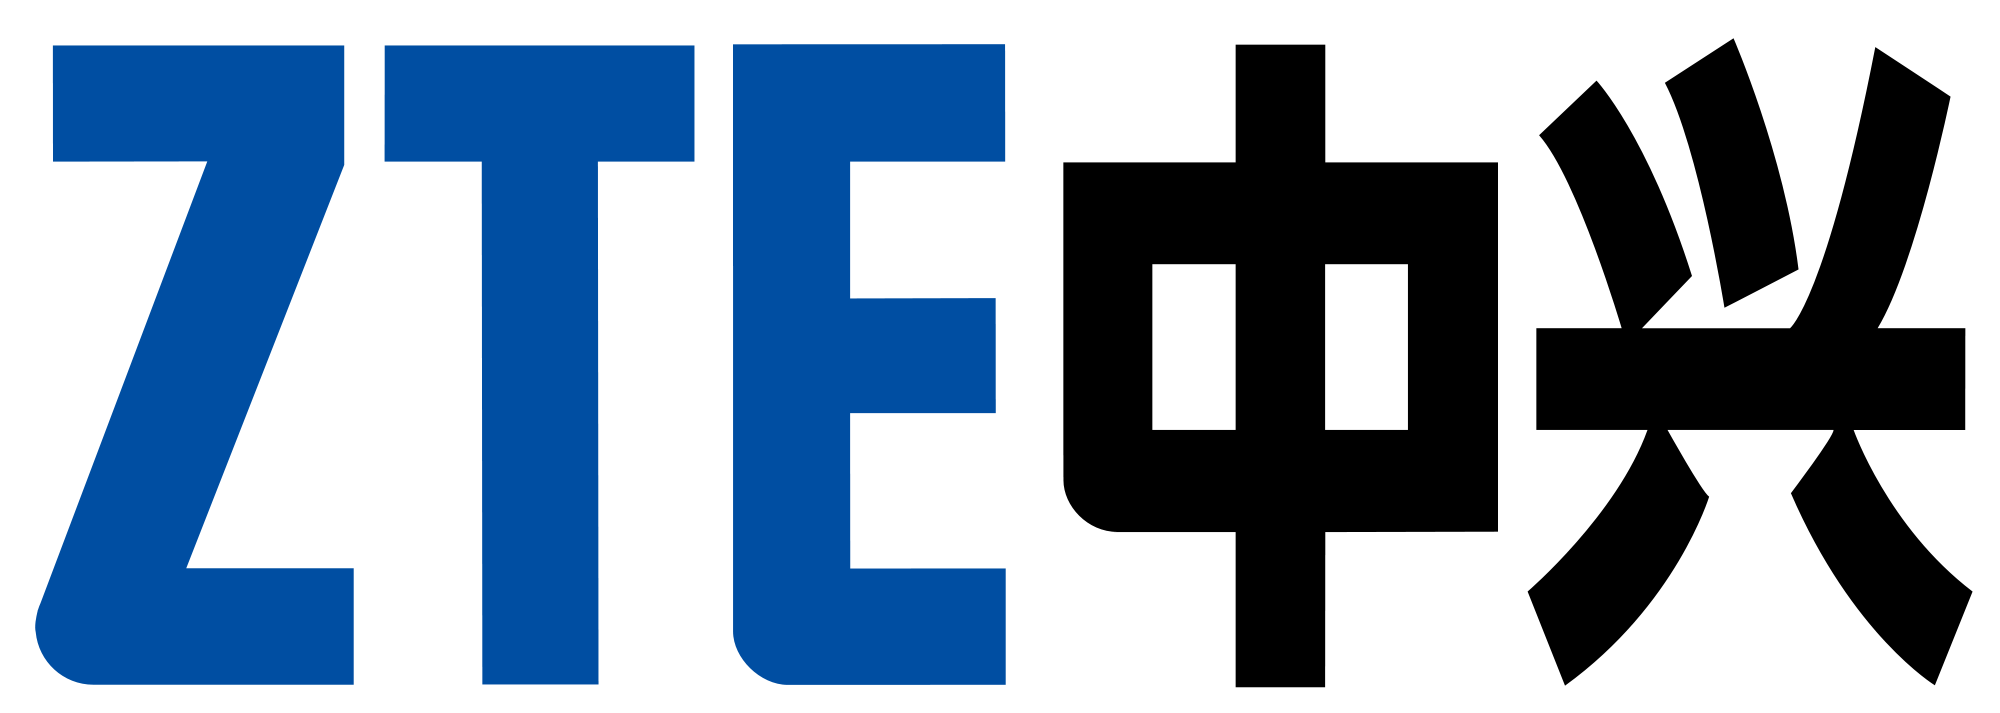 ZTE Brand Logo